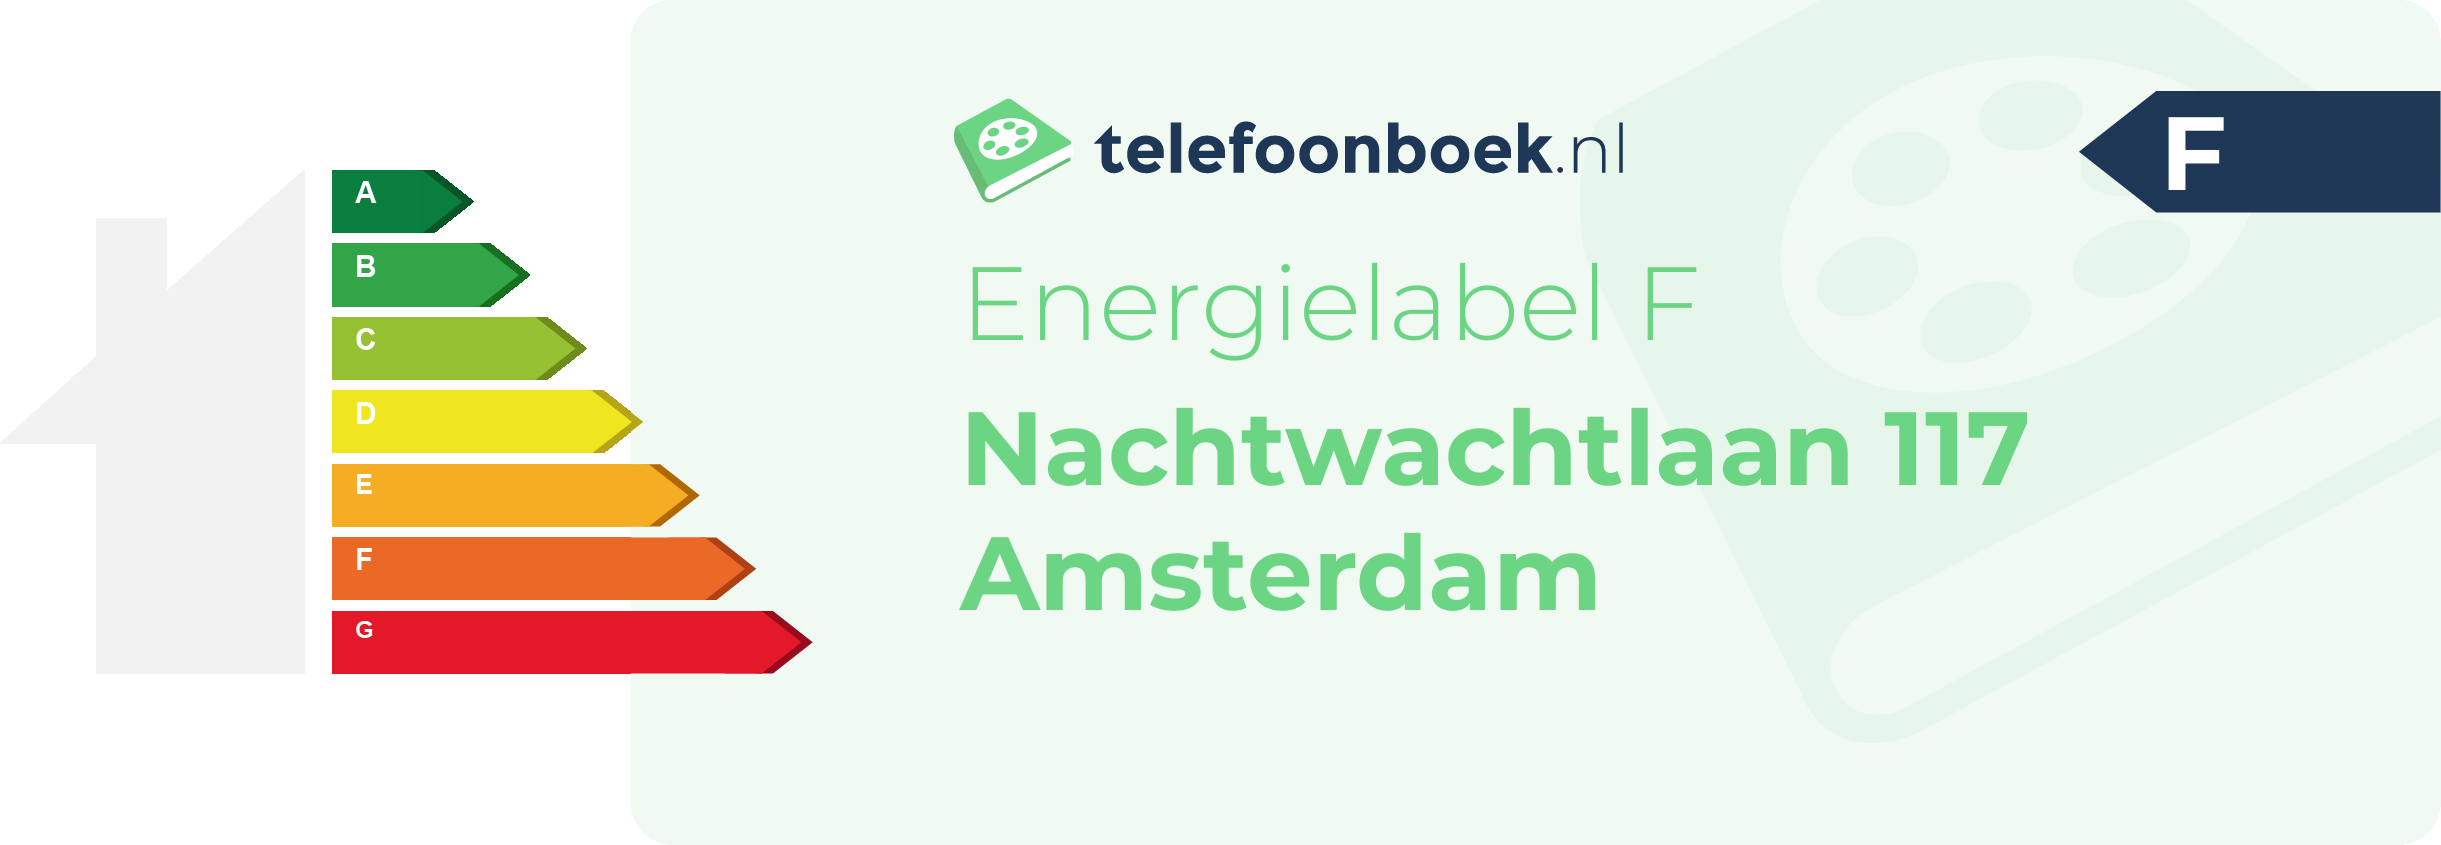 Energielabel Nachtwachtlaan 117 Amsterdam